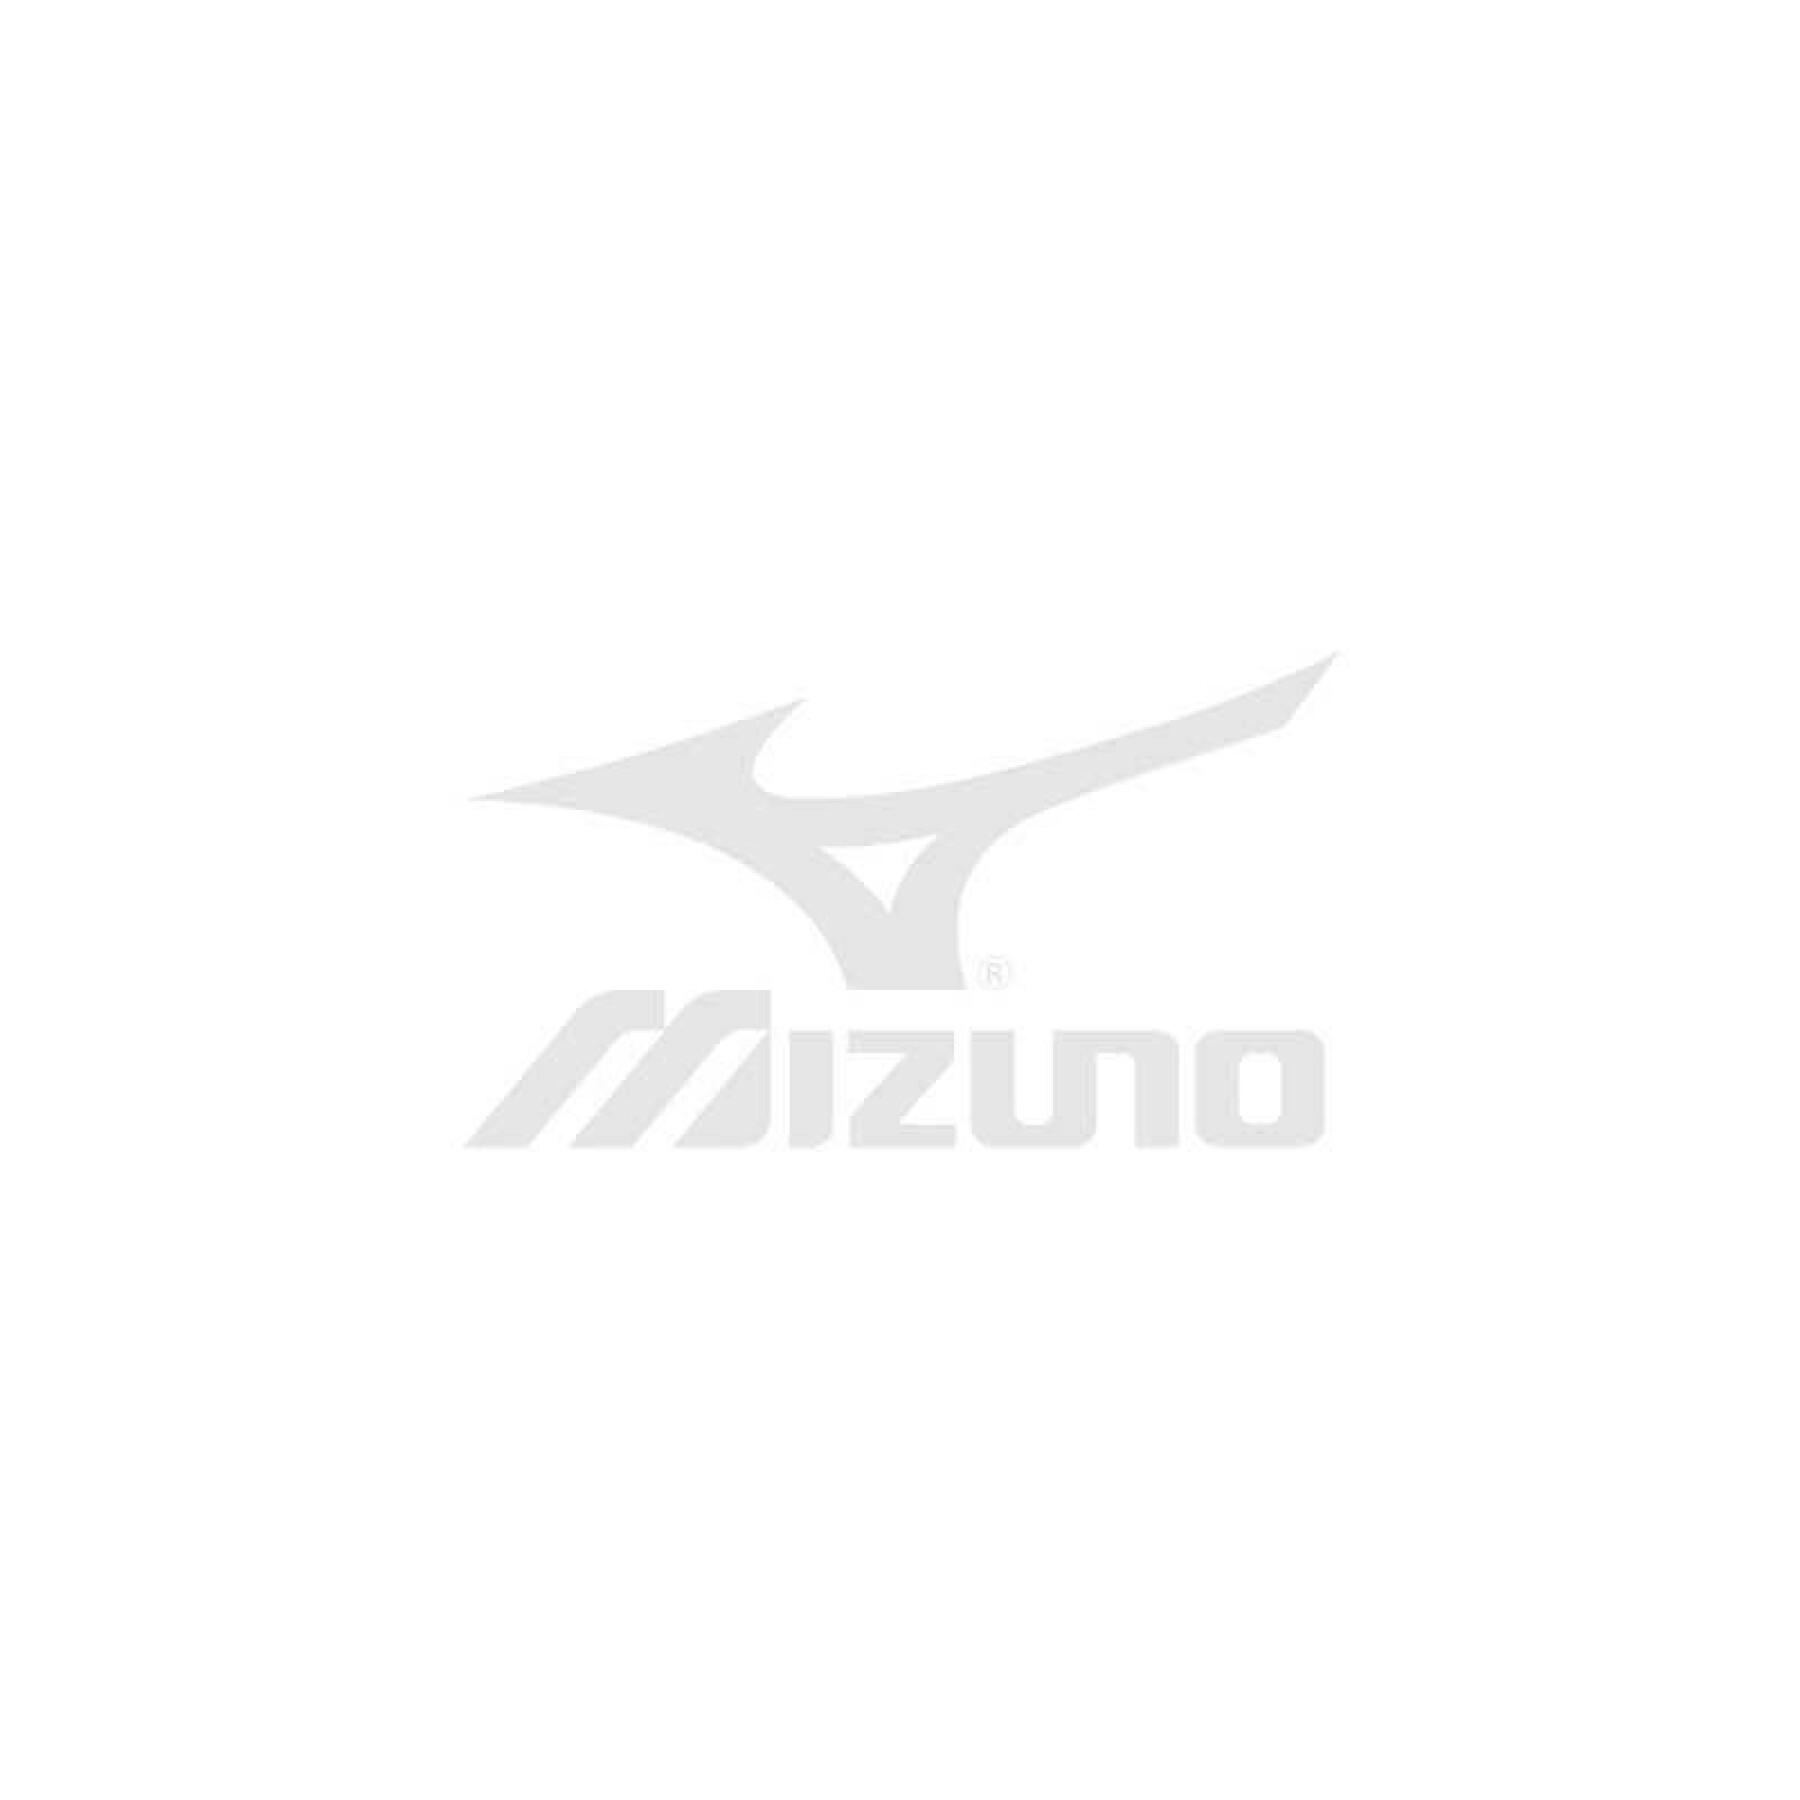 Voetbalschoenen Mizuno Monarcida Neo Select AG